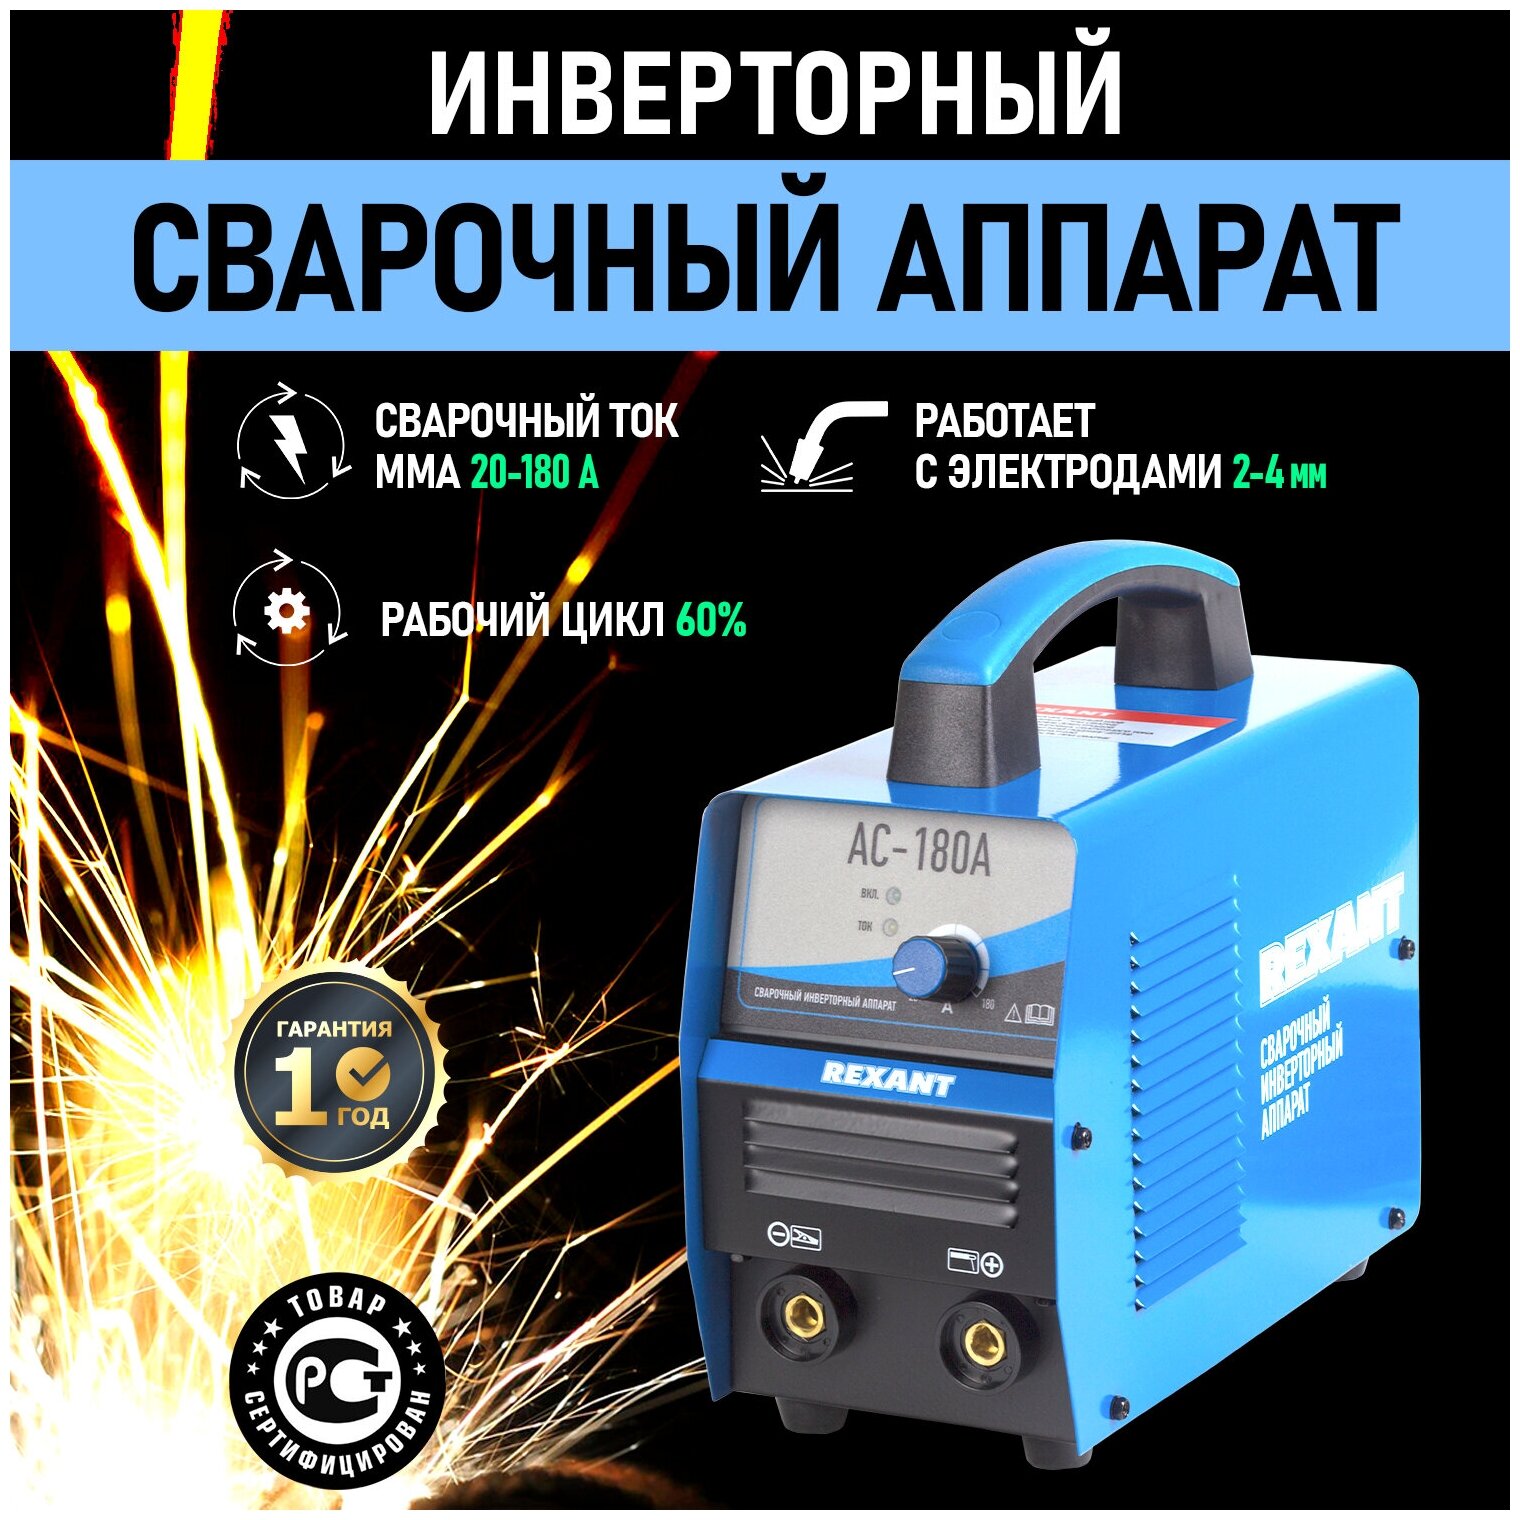 Сварочный аппарат REXANT АС-180А [11-0911] купить в Красноярске